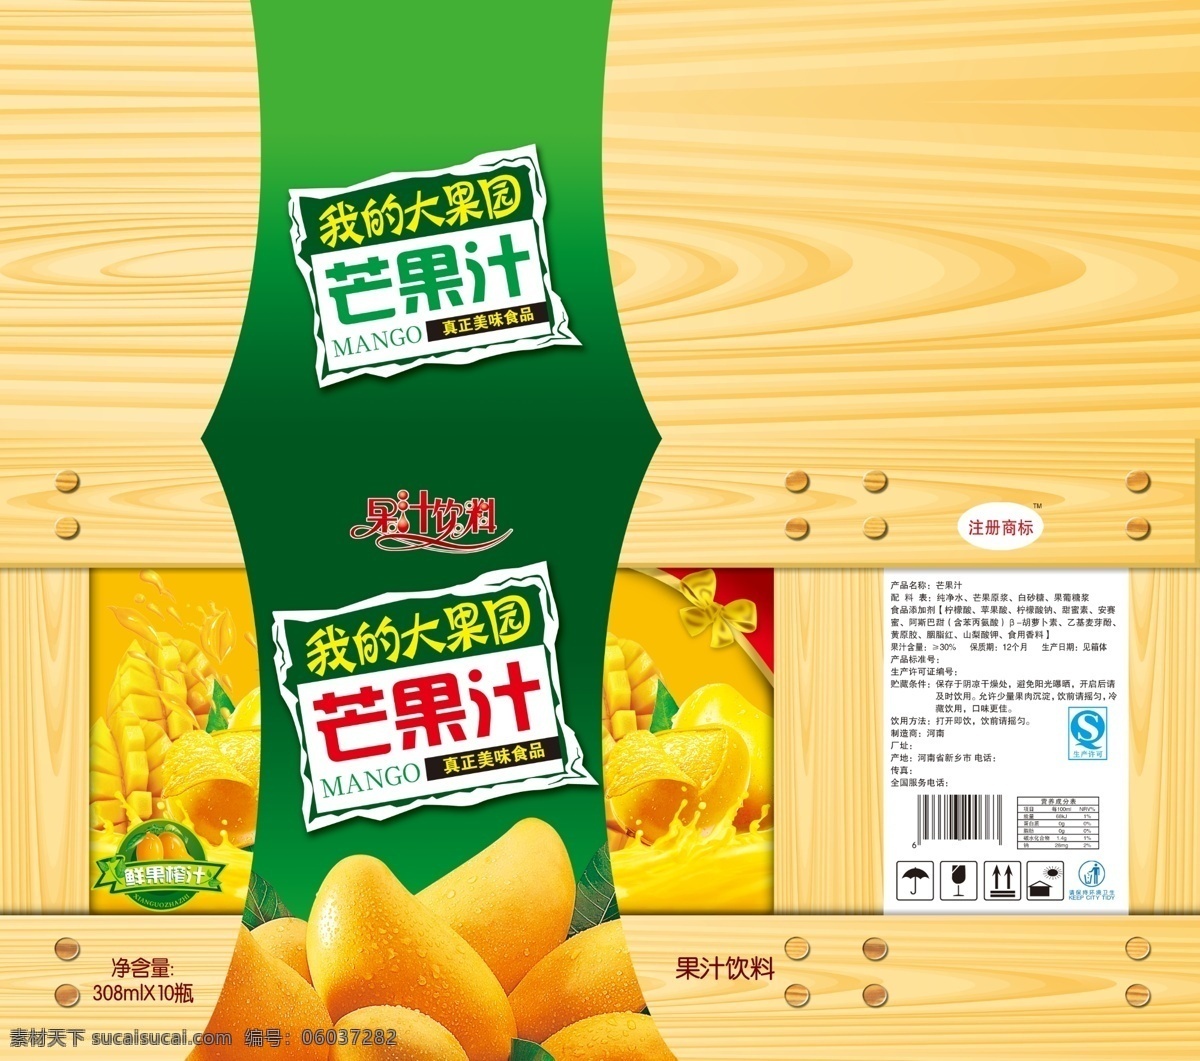 芒果汁 包装 展开 图 芒果 饮料包装 木纹 果汁 鲜果榨汁 我的大果园 果汁饮料 包装设计 白色